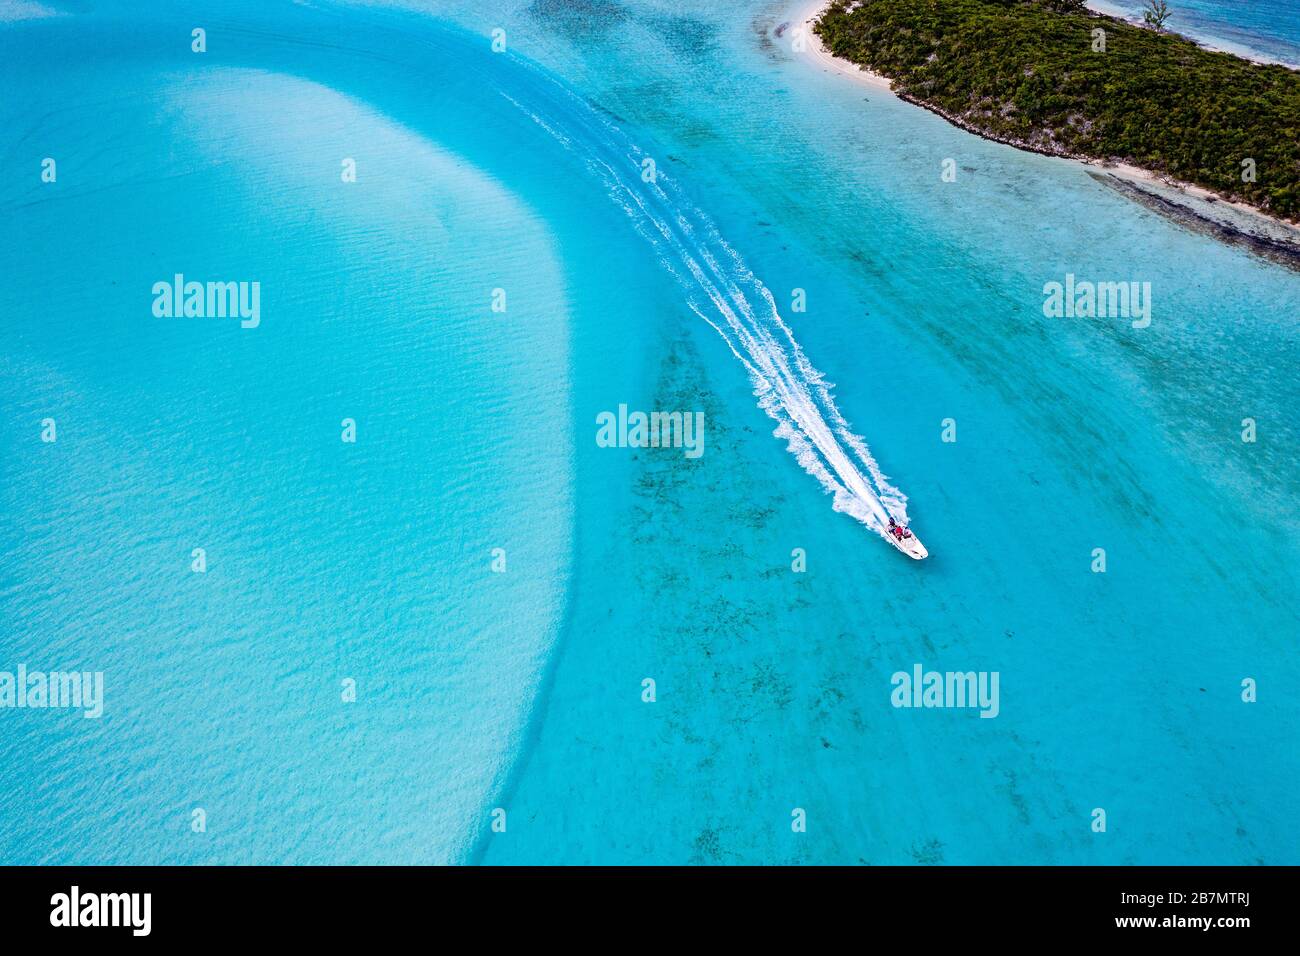 Exuma Cays Land and sea Park, Exuma Island Chain, Bahamas Foto de stock